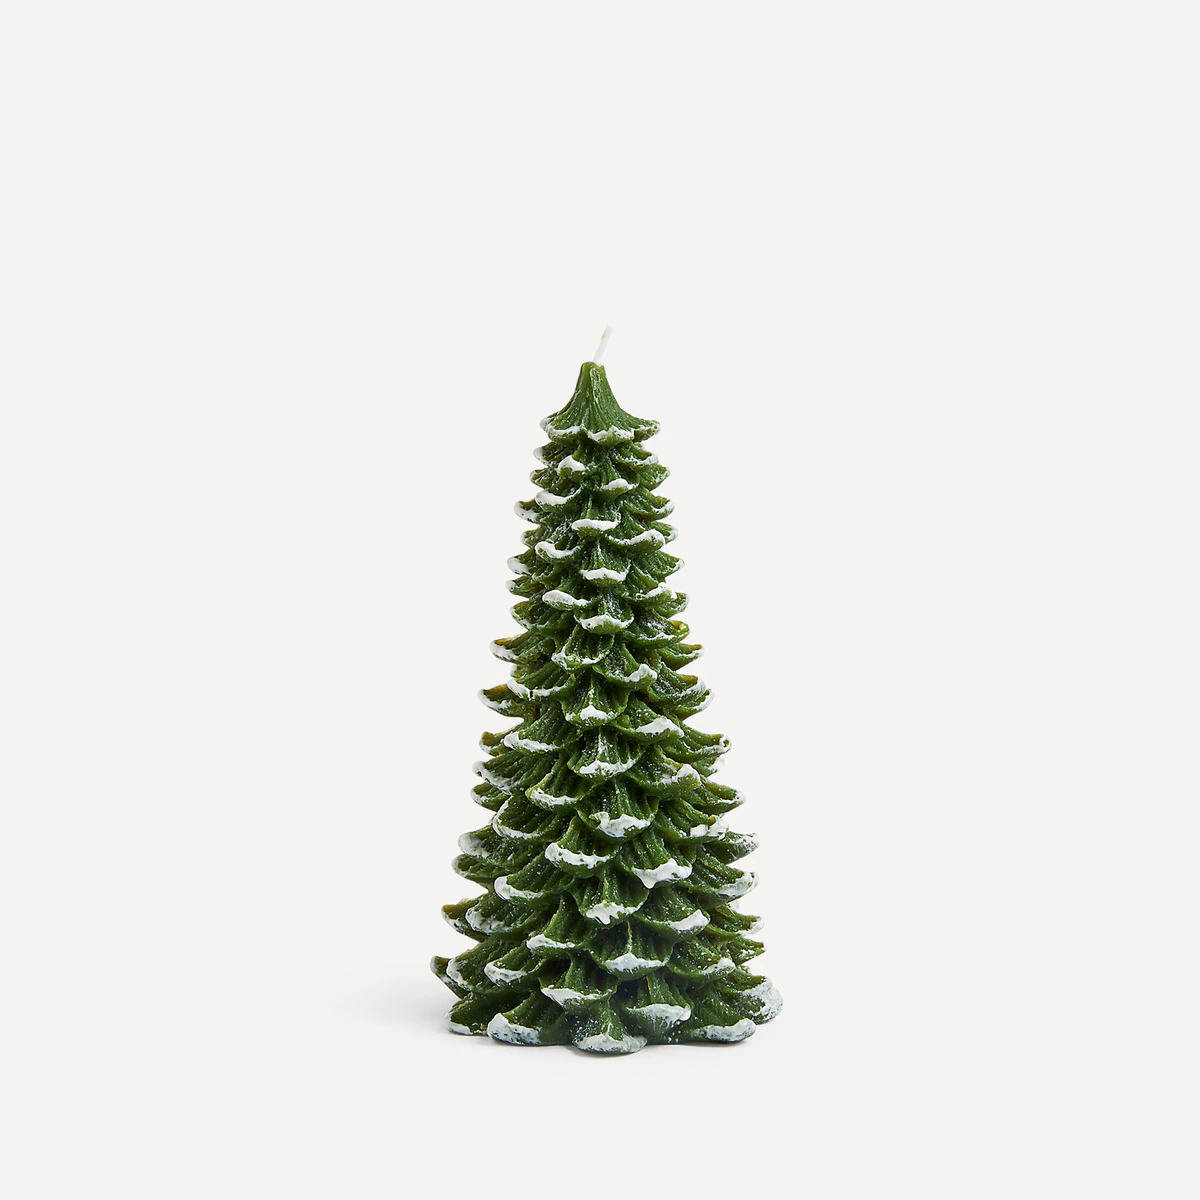 Vela con forma de árbol de Navidad de El Corte Inglés.